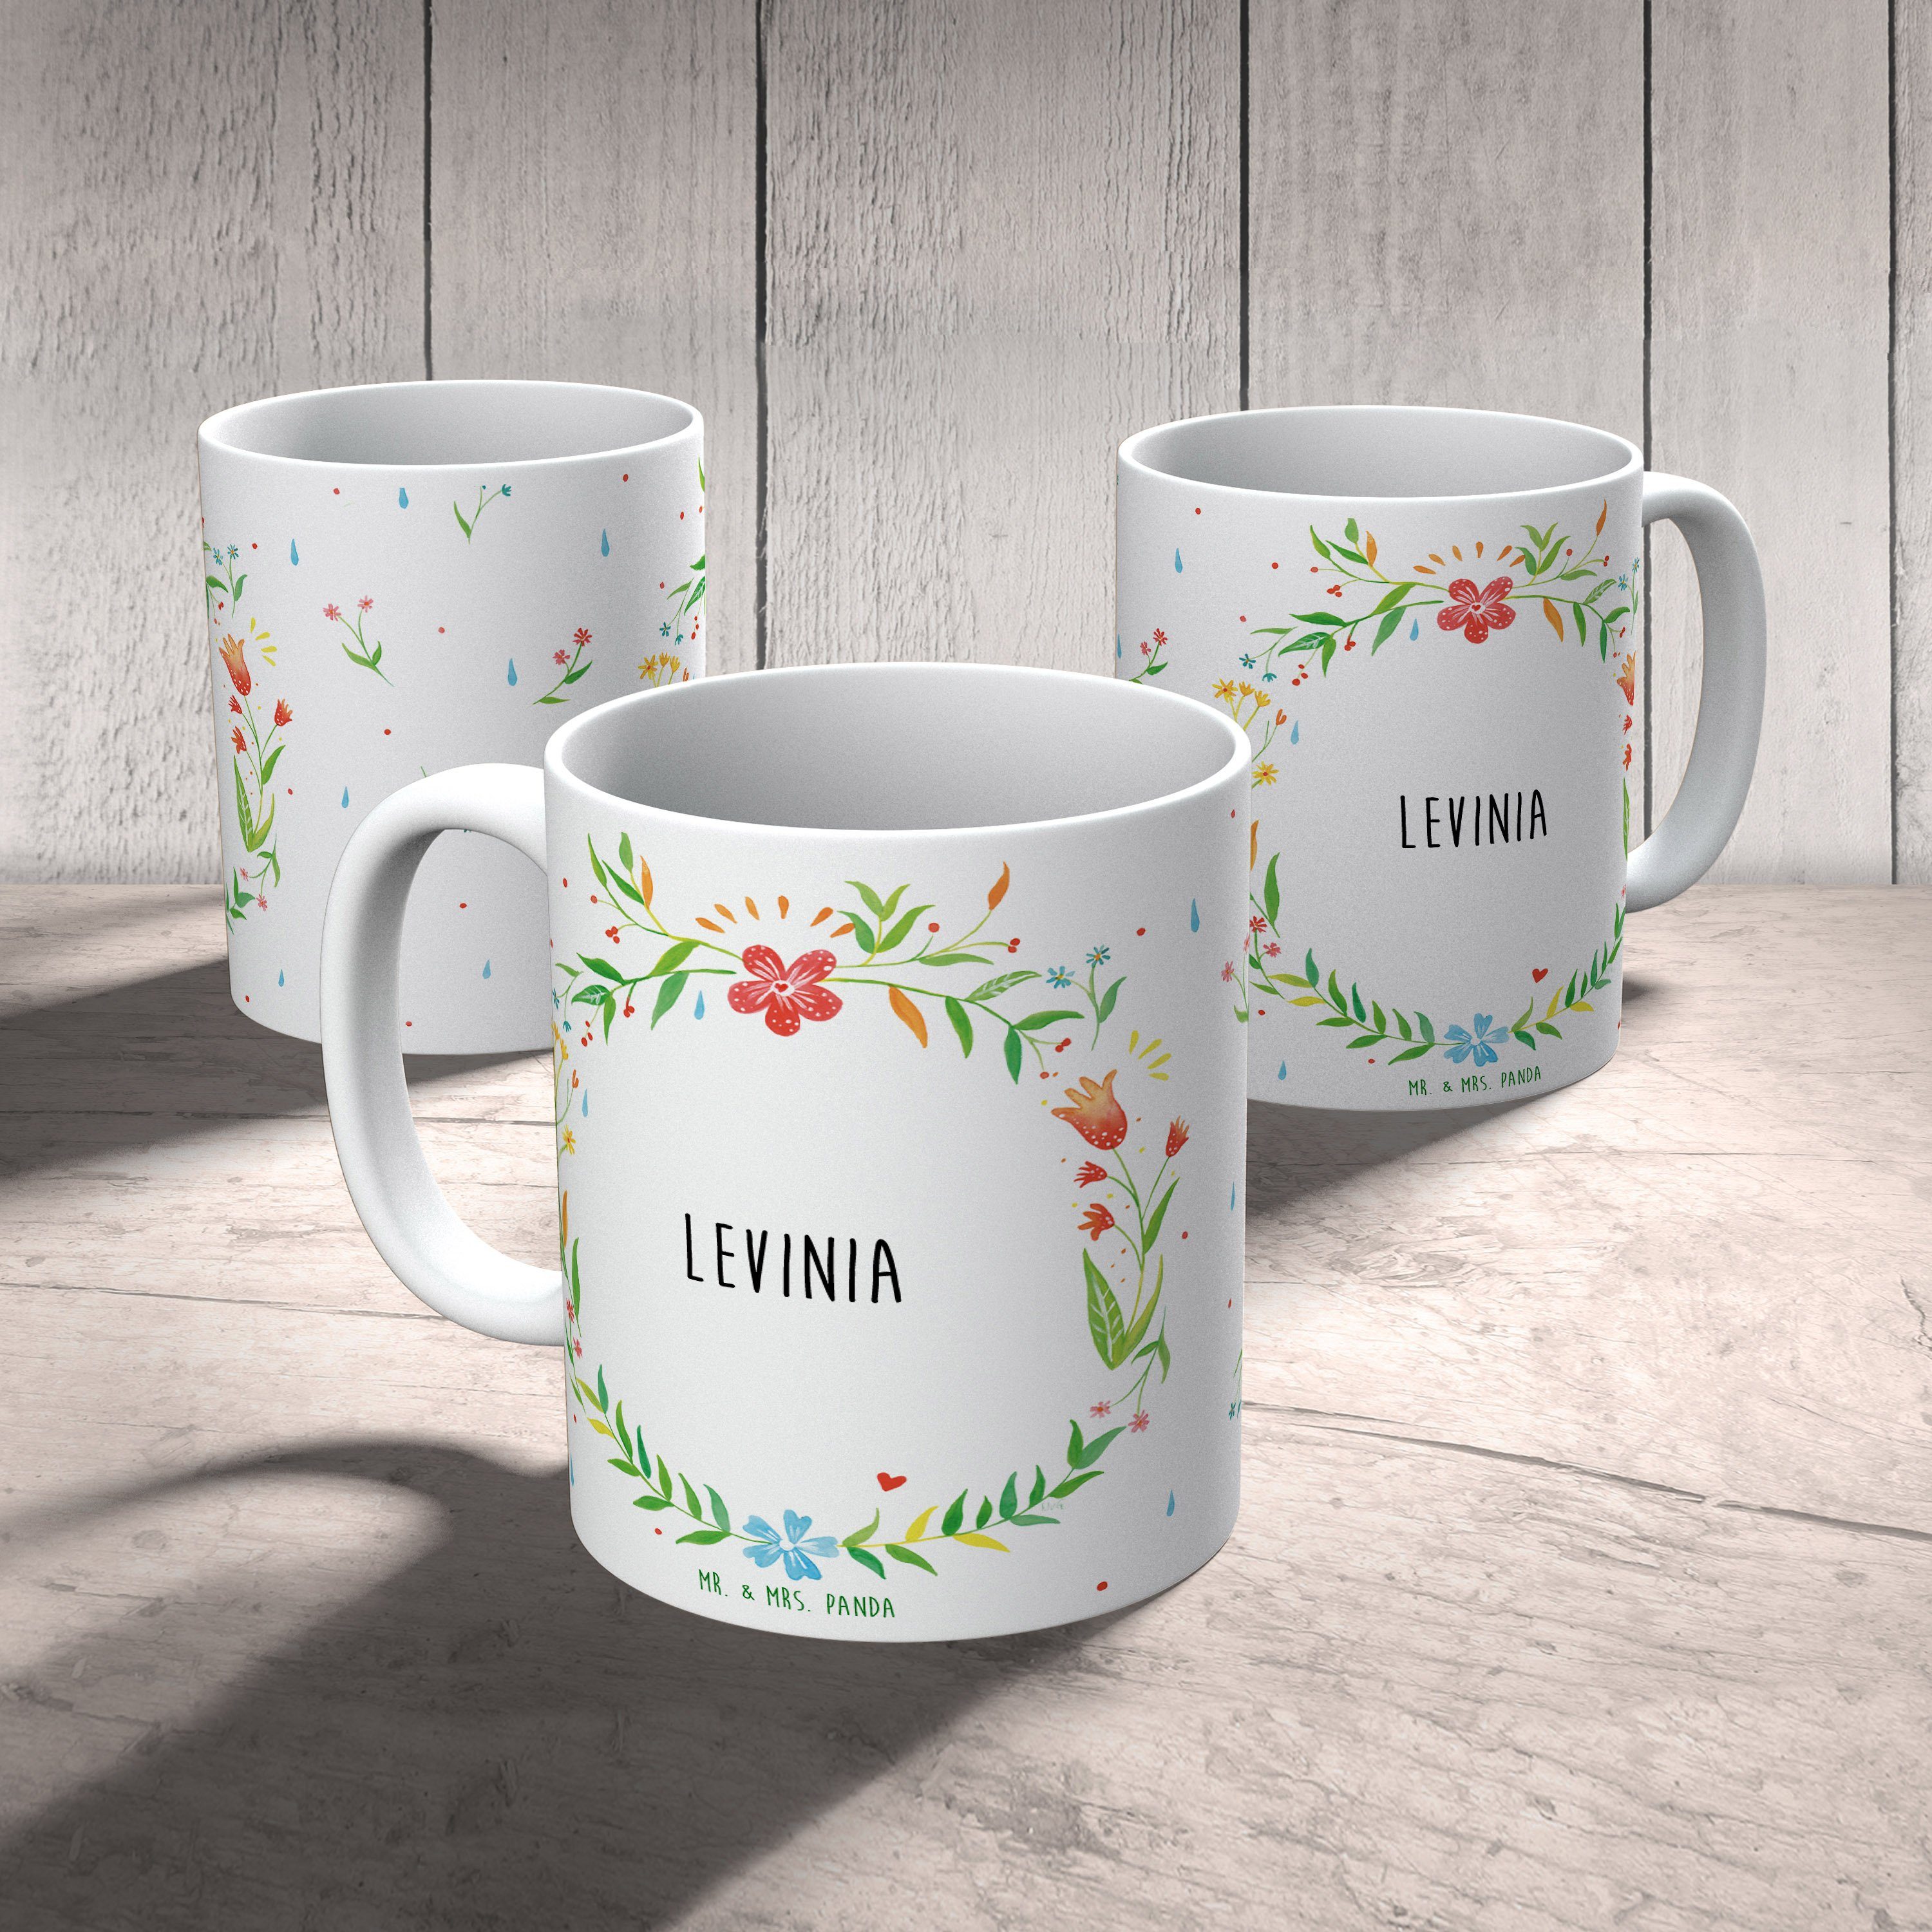 Mr. & Mrs. Tasse Tasse, Geschenk, Sprüche, Keramik Kaffeebecher, - Levinia Panda Geschenk Tasse Teeb